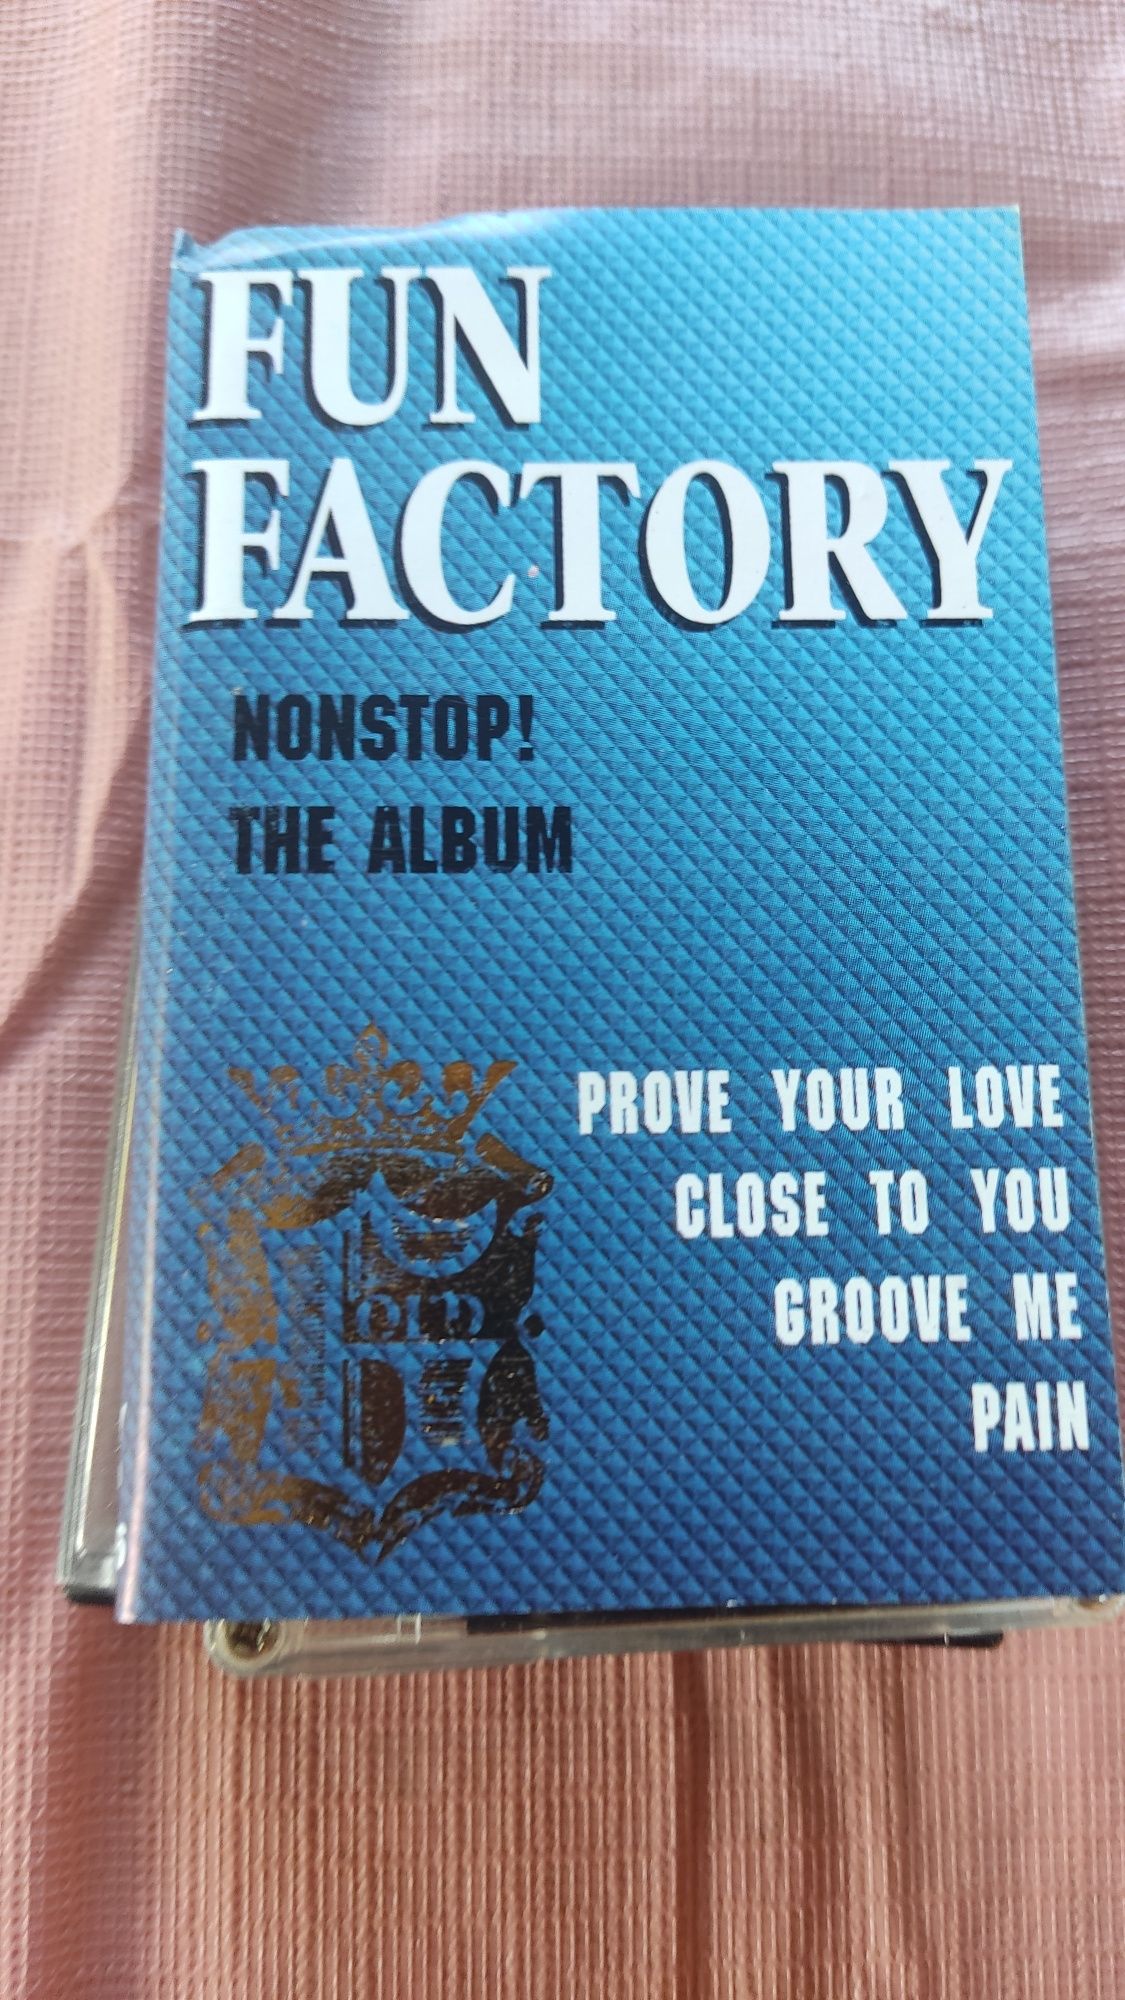 Fun Factory Non-stop The album kaseta audio